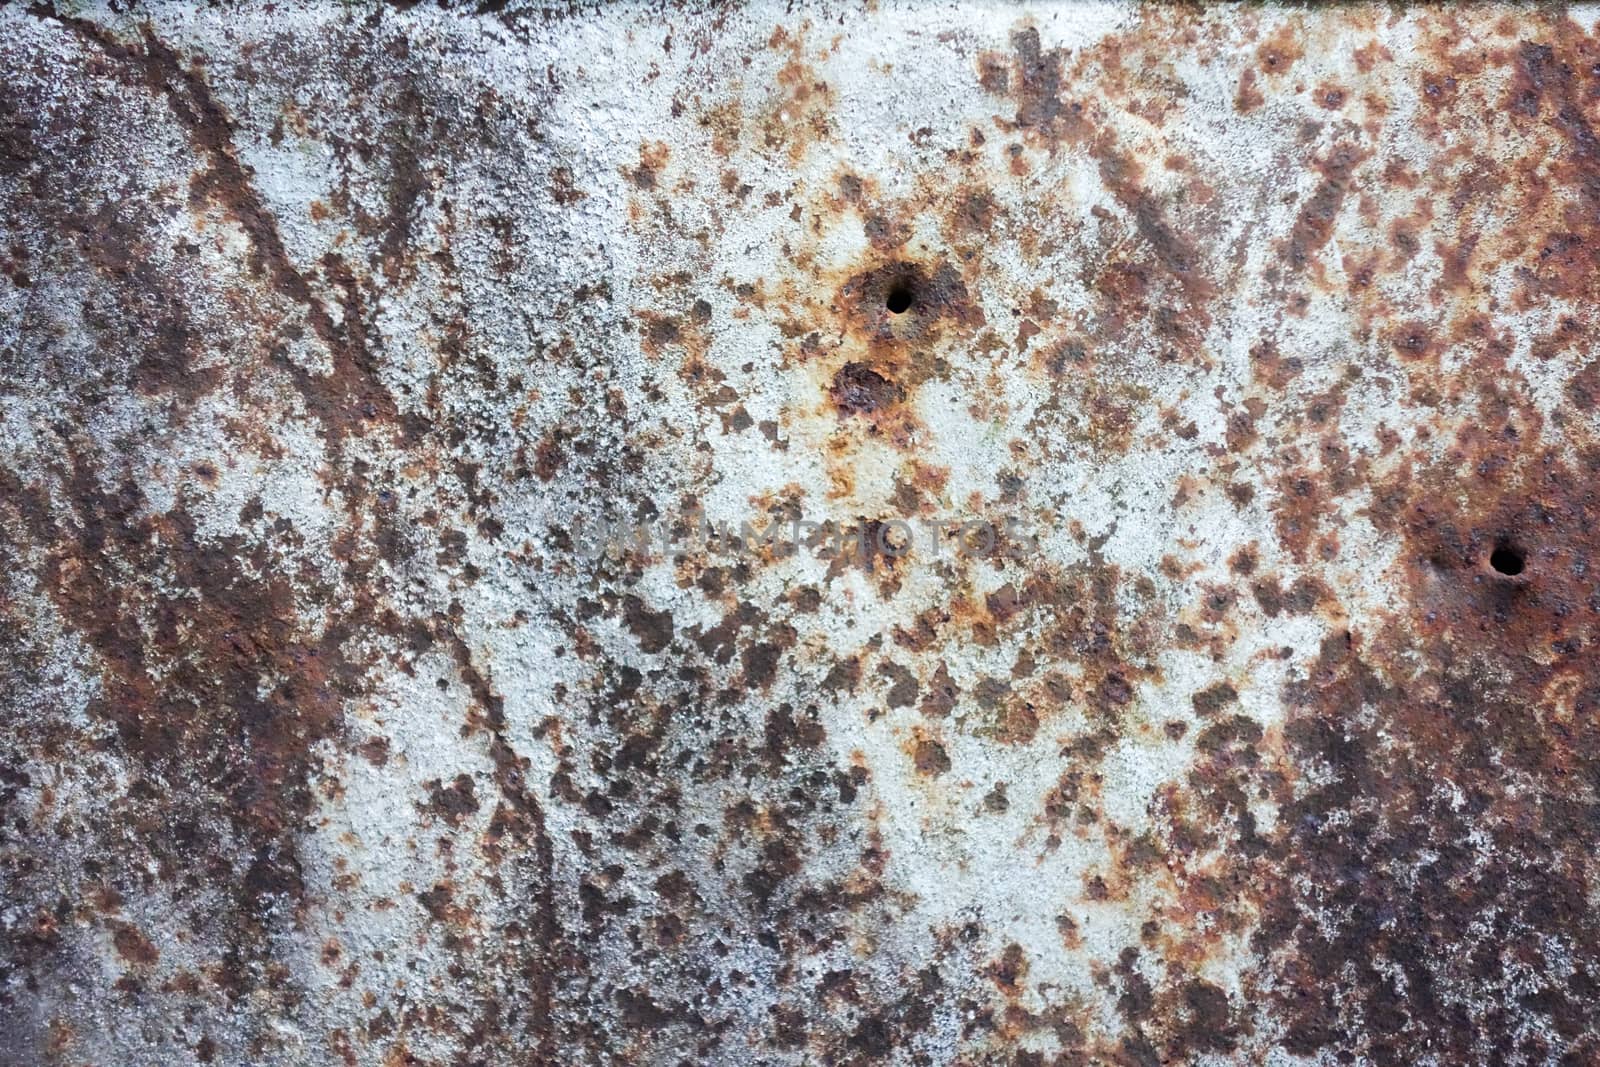 Dark worn rusty metal texture background.